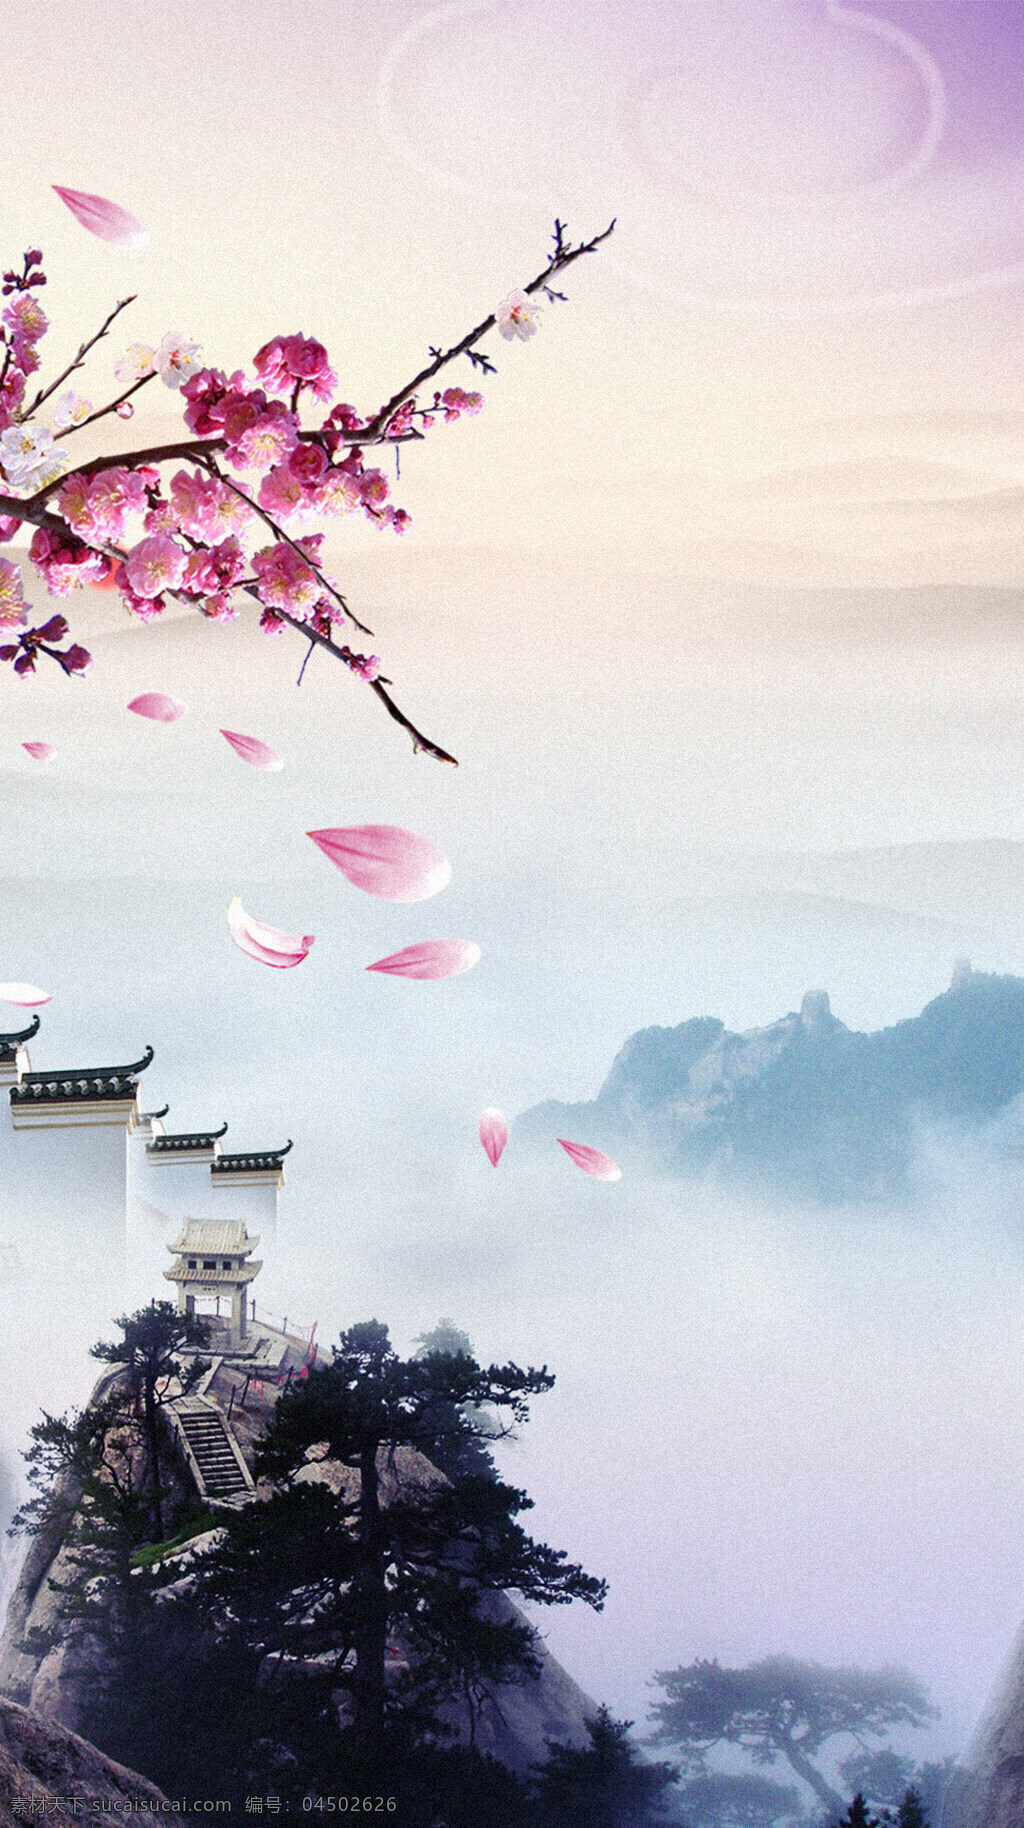 中国 风 h5 背景图片 中国风 h5背景 古风 花朵 仙境 意境 山